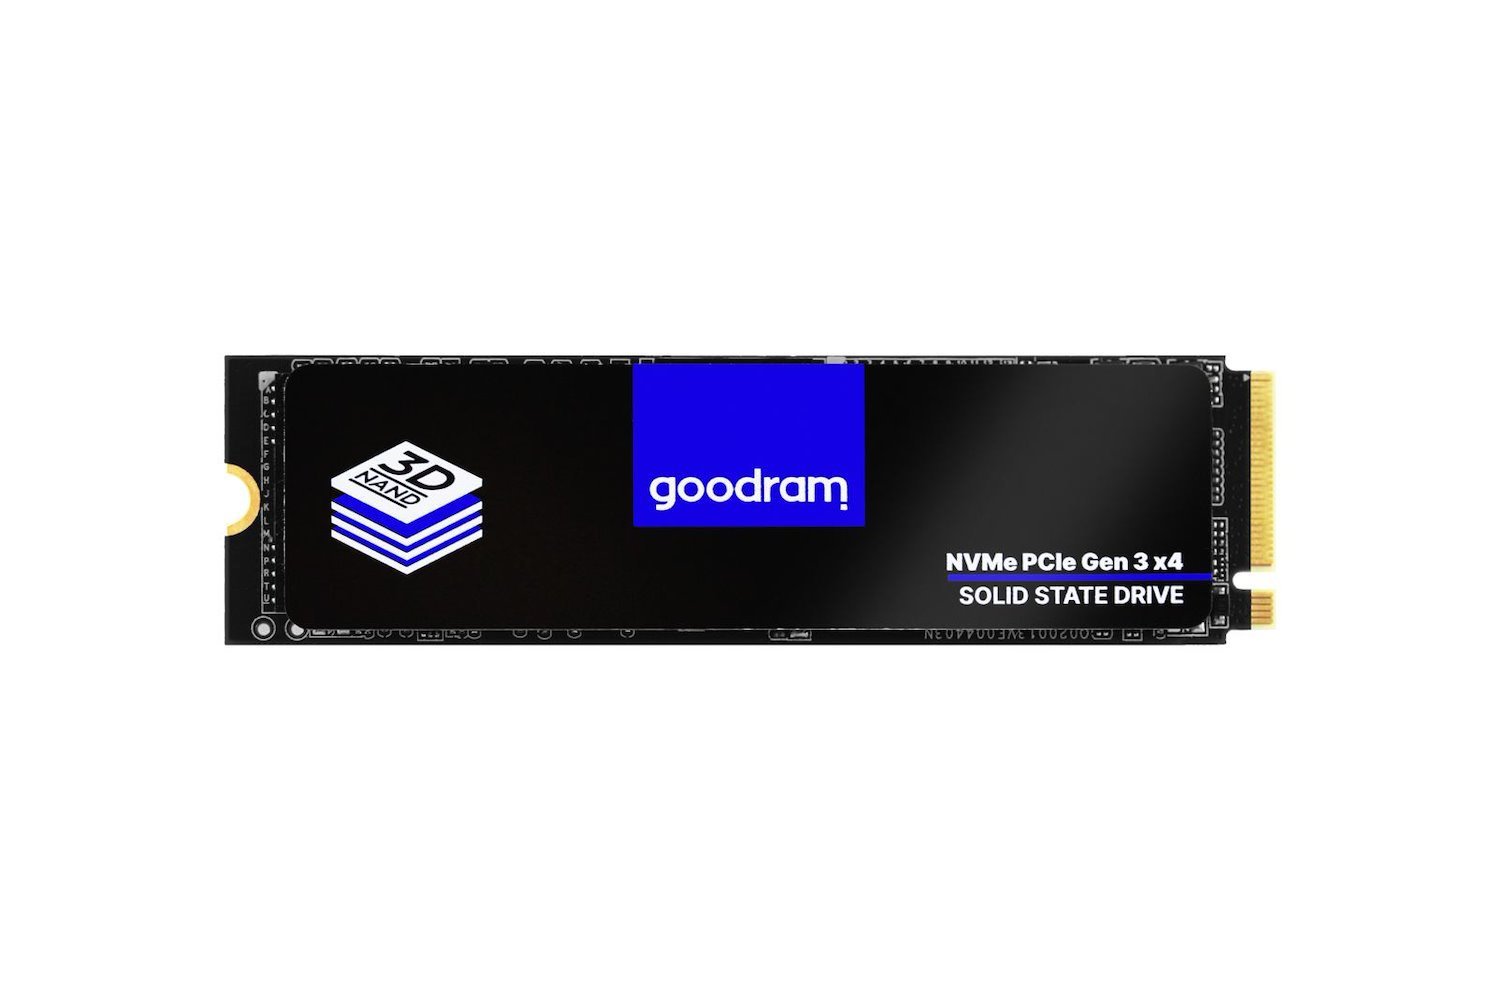 Goodram PX500 Gen.2 M.2 1 TB Pci Express 3.0 3D Nand NVMe (Goodram PX500 Gen.2 M.2 1000 GB Pci Express 3.0 3D Nand NVMe)